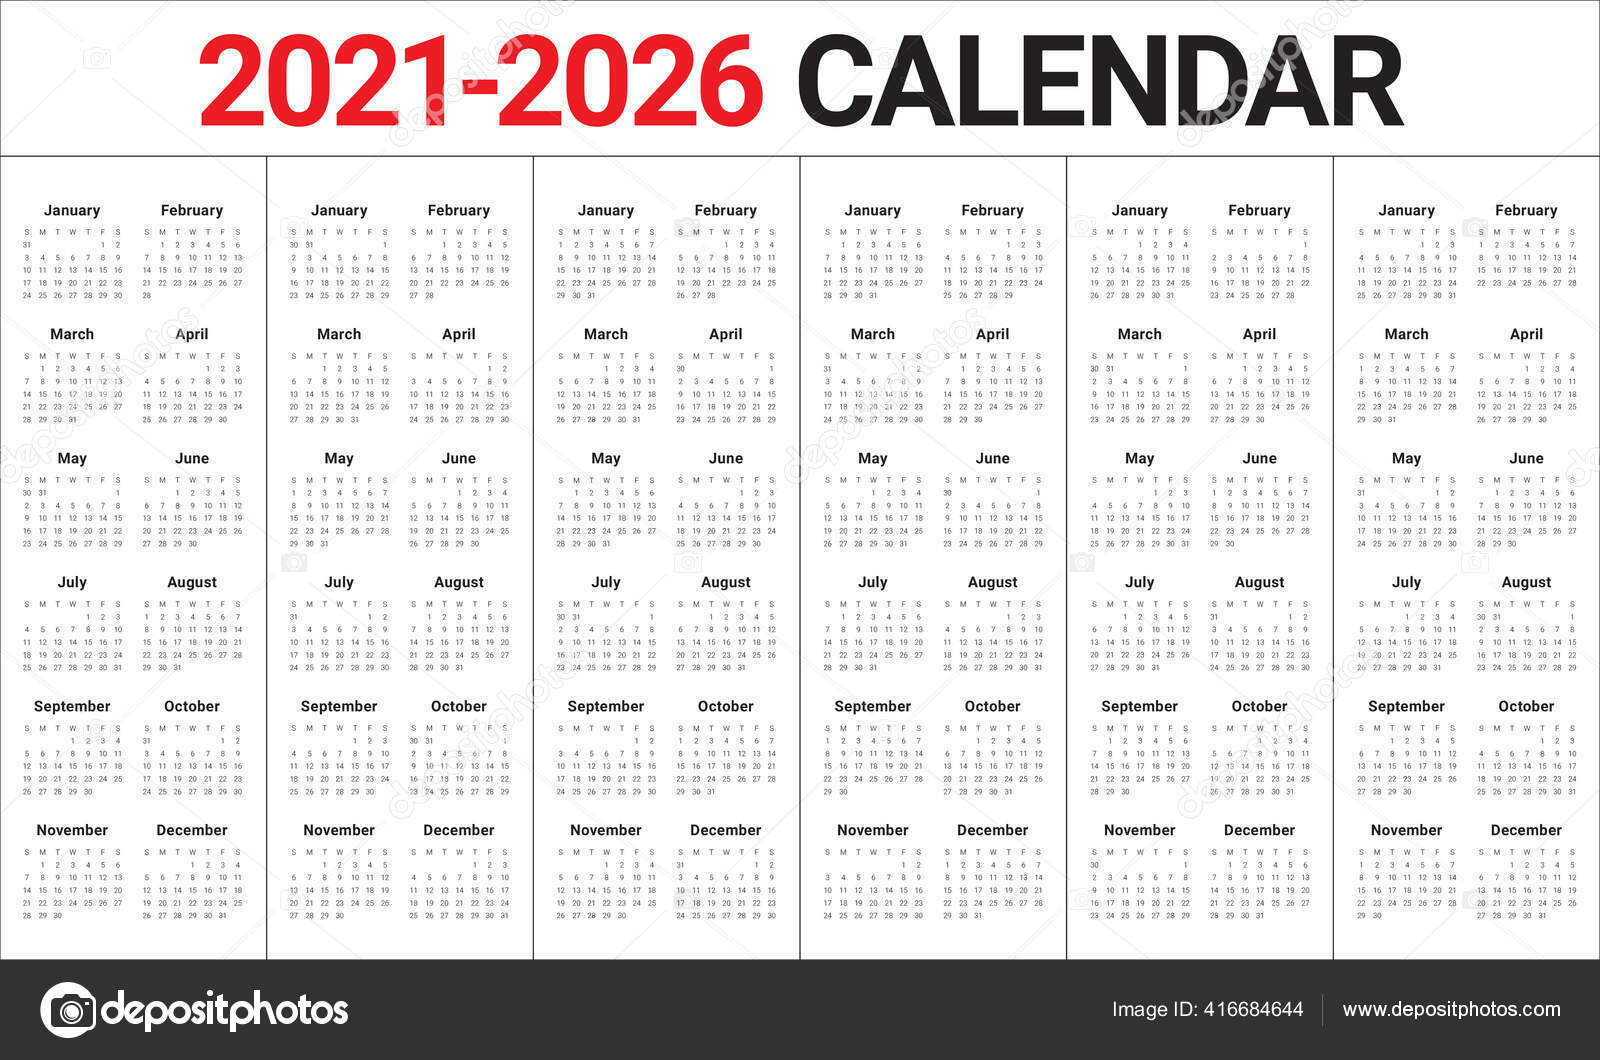 Year 2021 2022 2023 2024 2025 2026 Calendar Vector Design Stock Vector